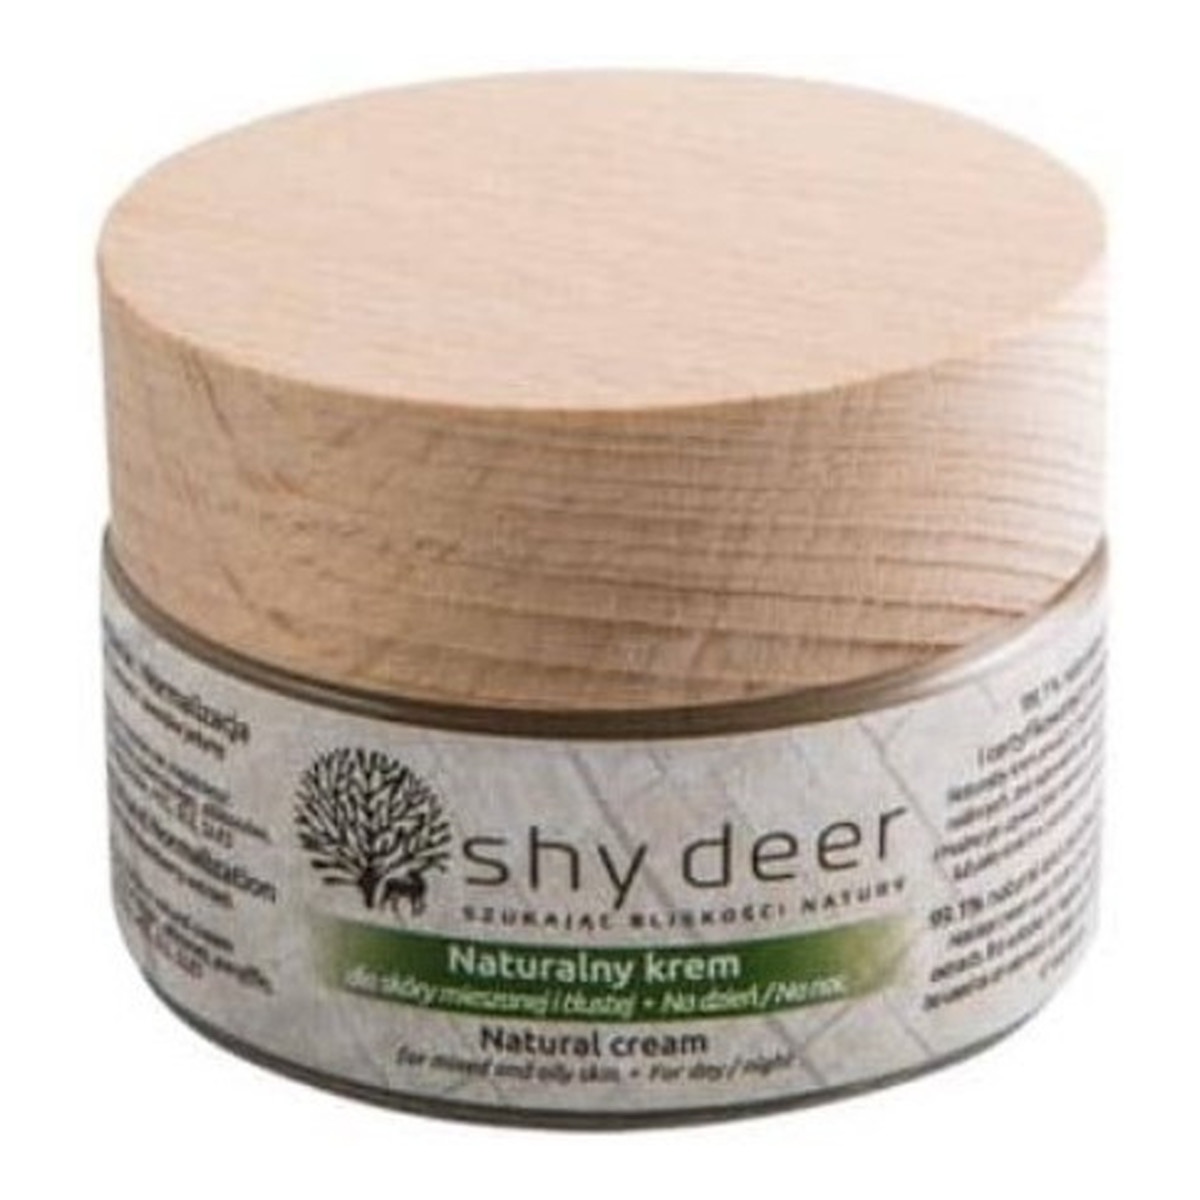 Shy Deer Natural Cream naturalny krem do skóry mieszanej i tłustej 50ml